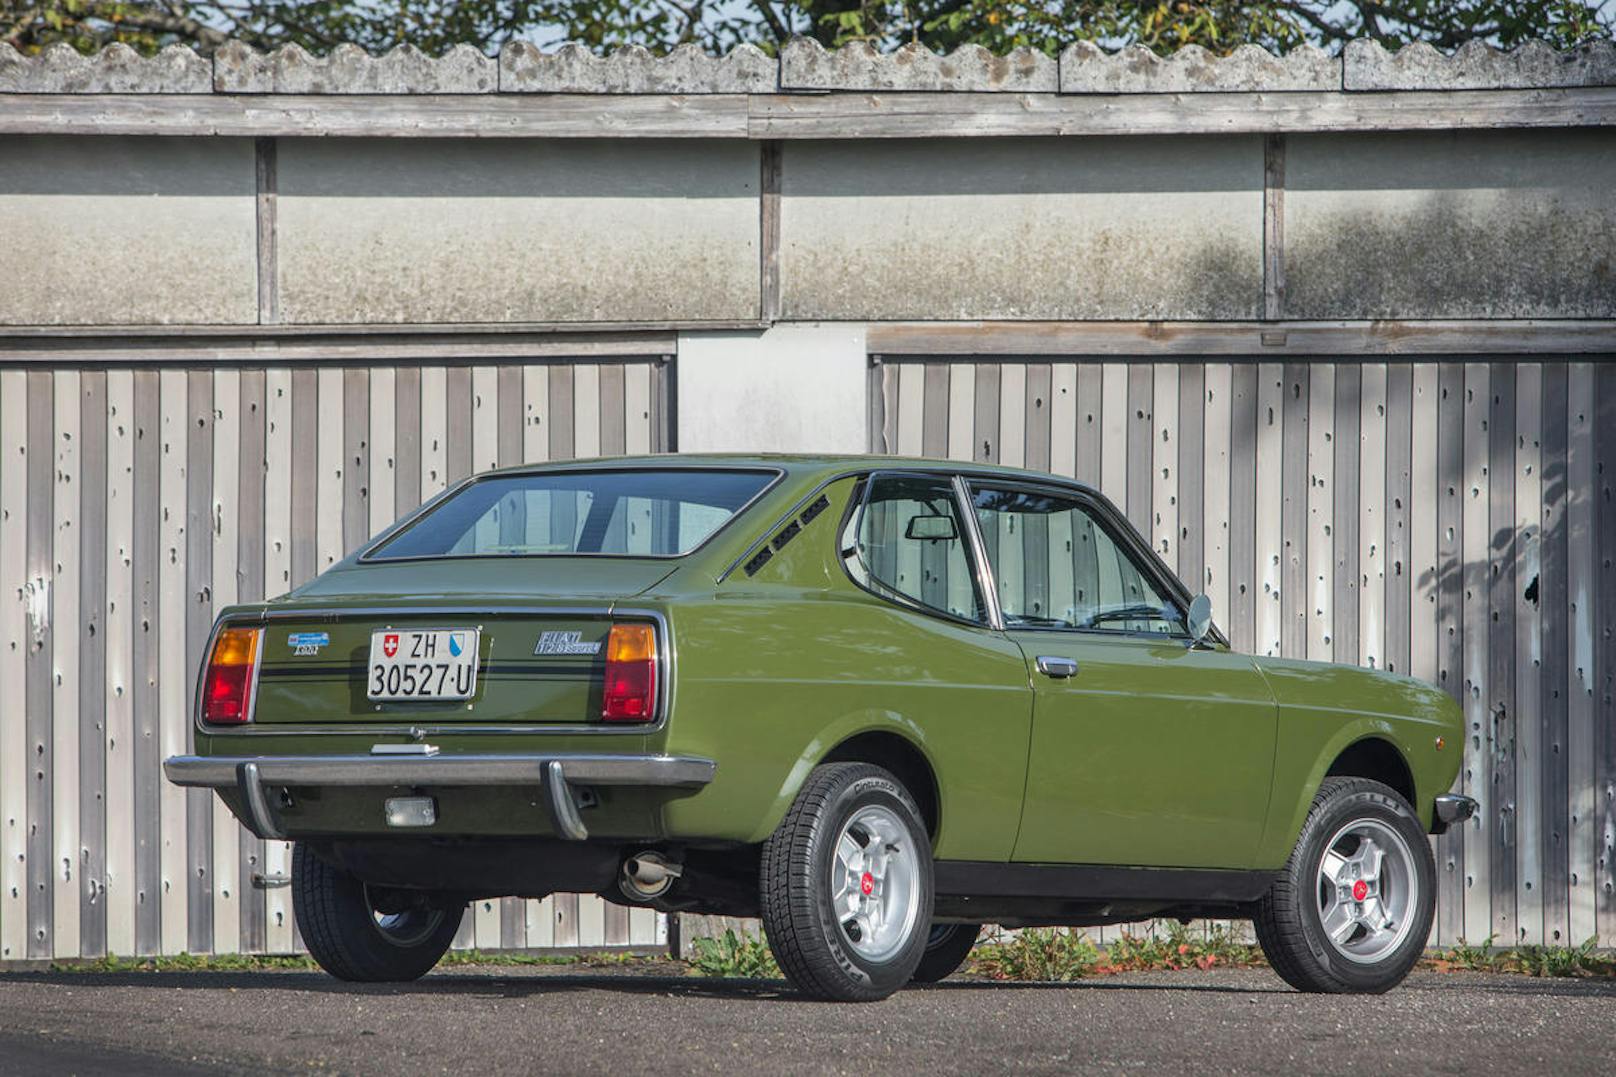 Der Vorgänger, das Fiat 128 Coupé 1300 SL, hatte nur einen kleinen Kofferraumdeckel und eine deutlich weniger übersichtliche Heckgestaltung.